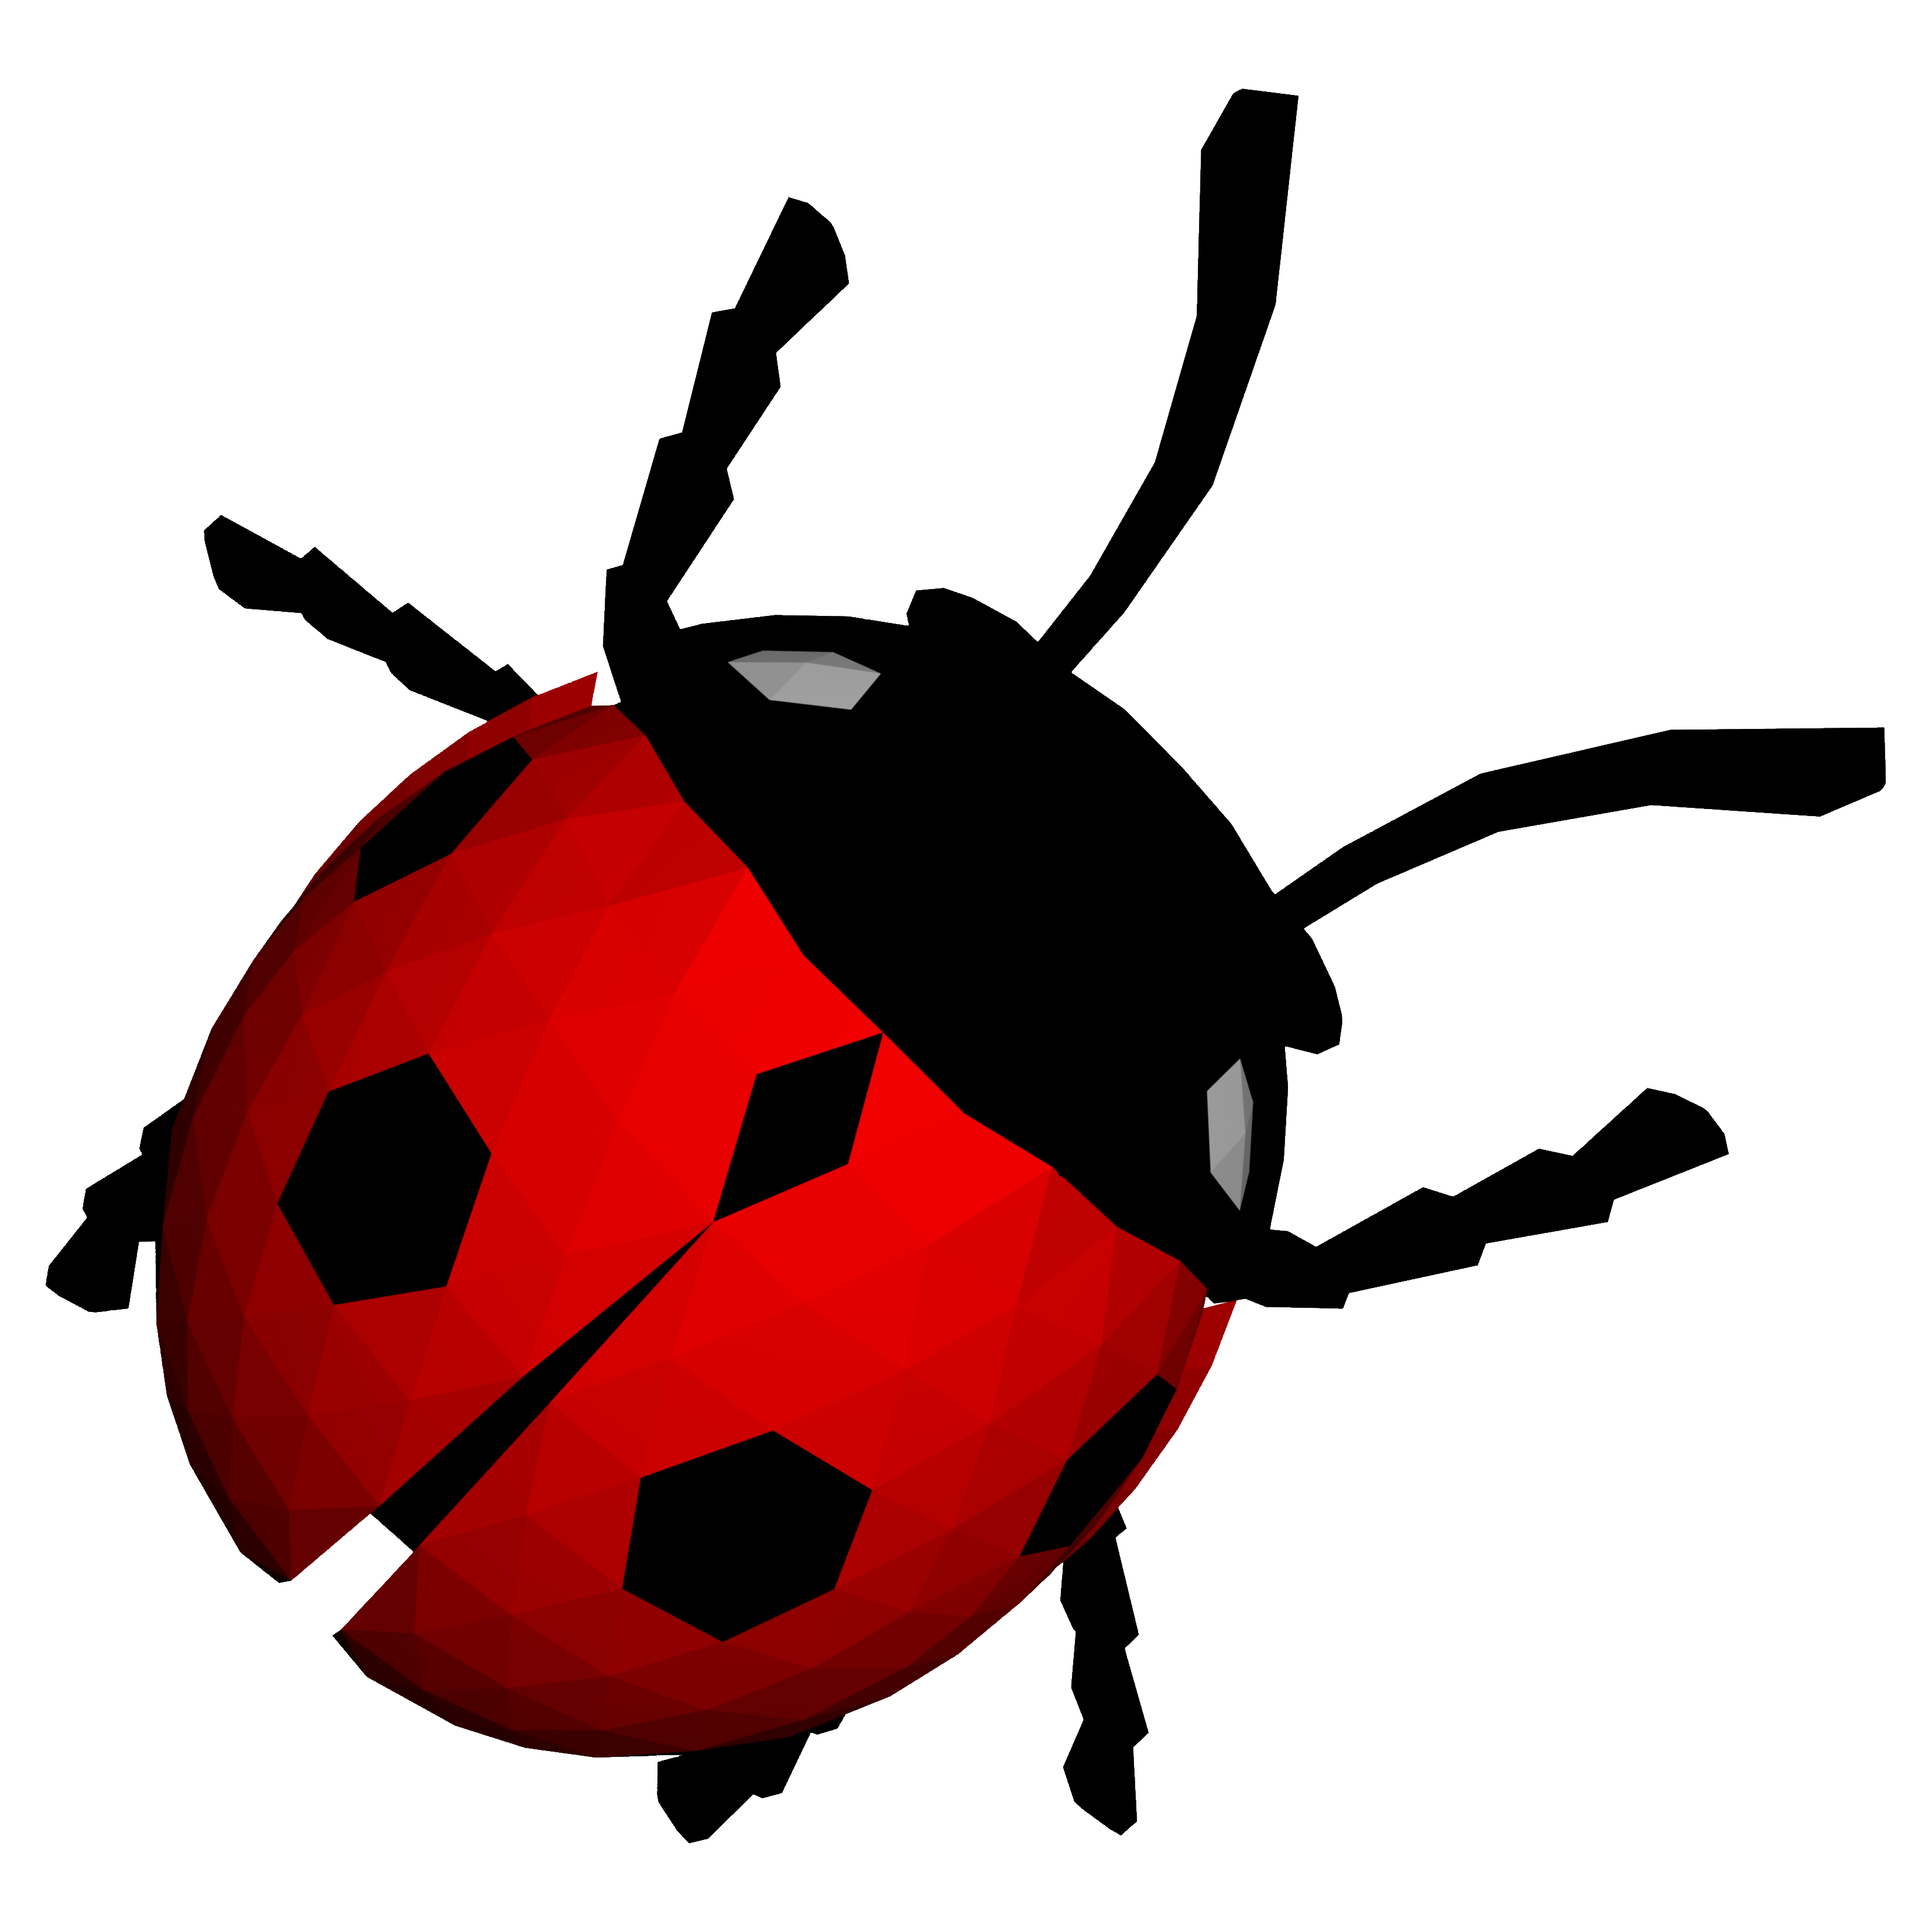 Ladybug Transparent Image